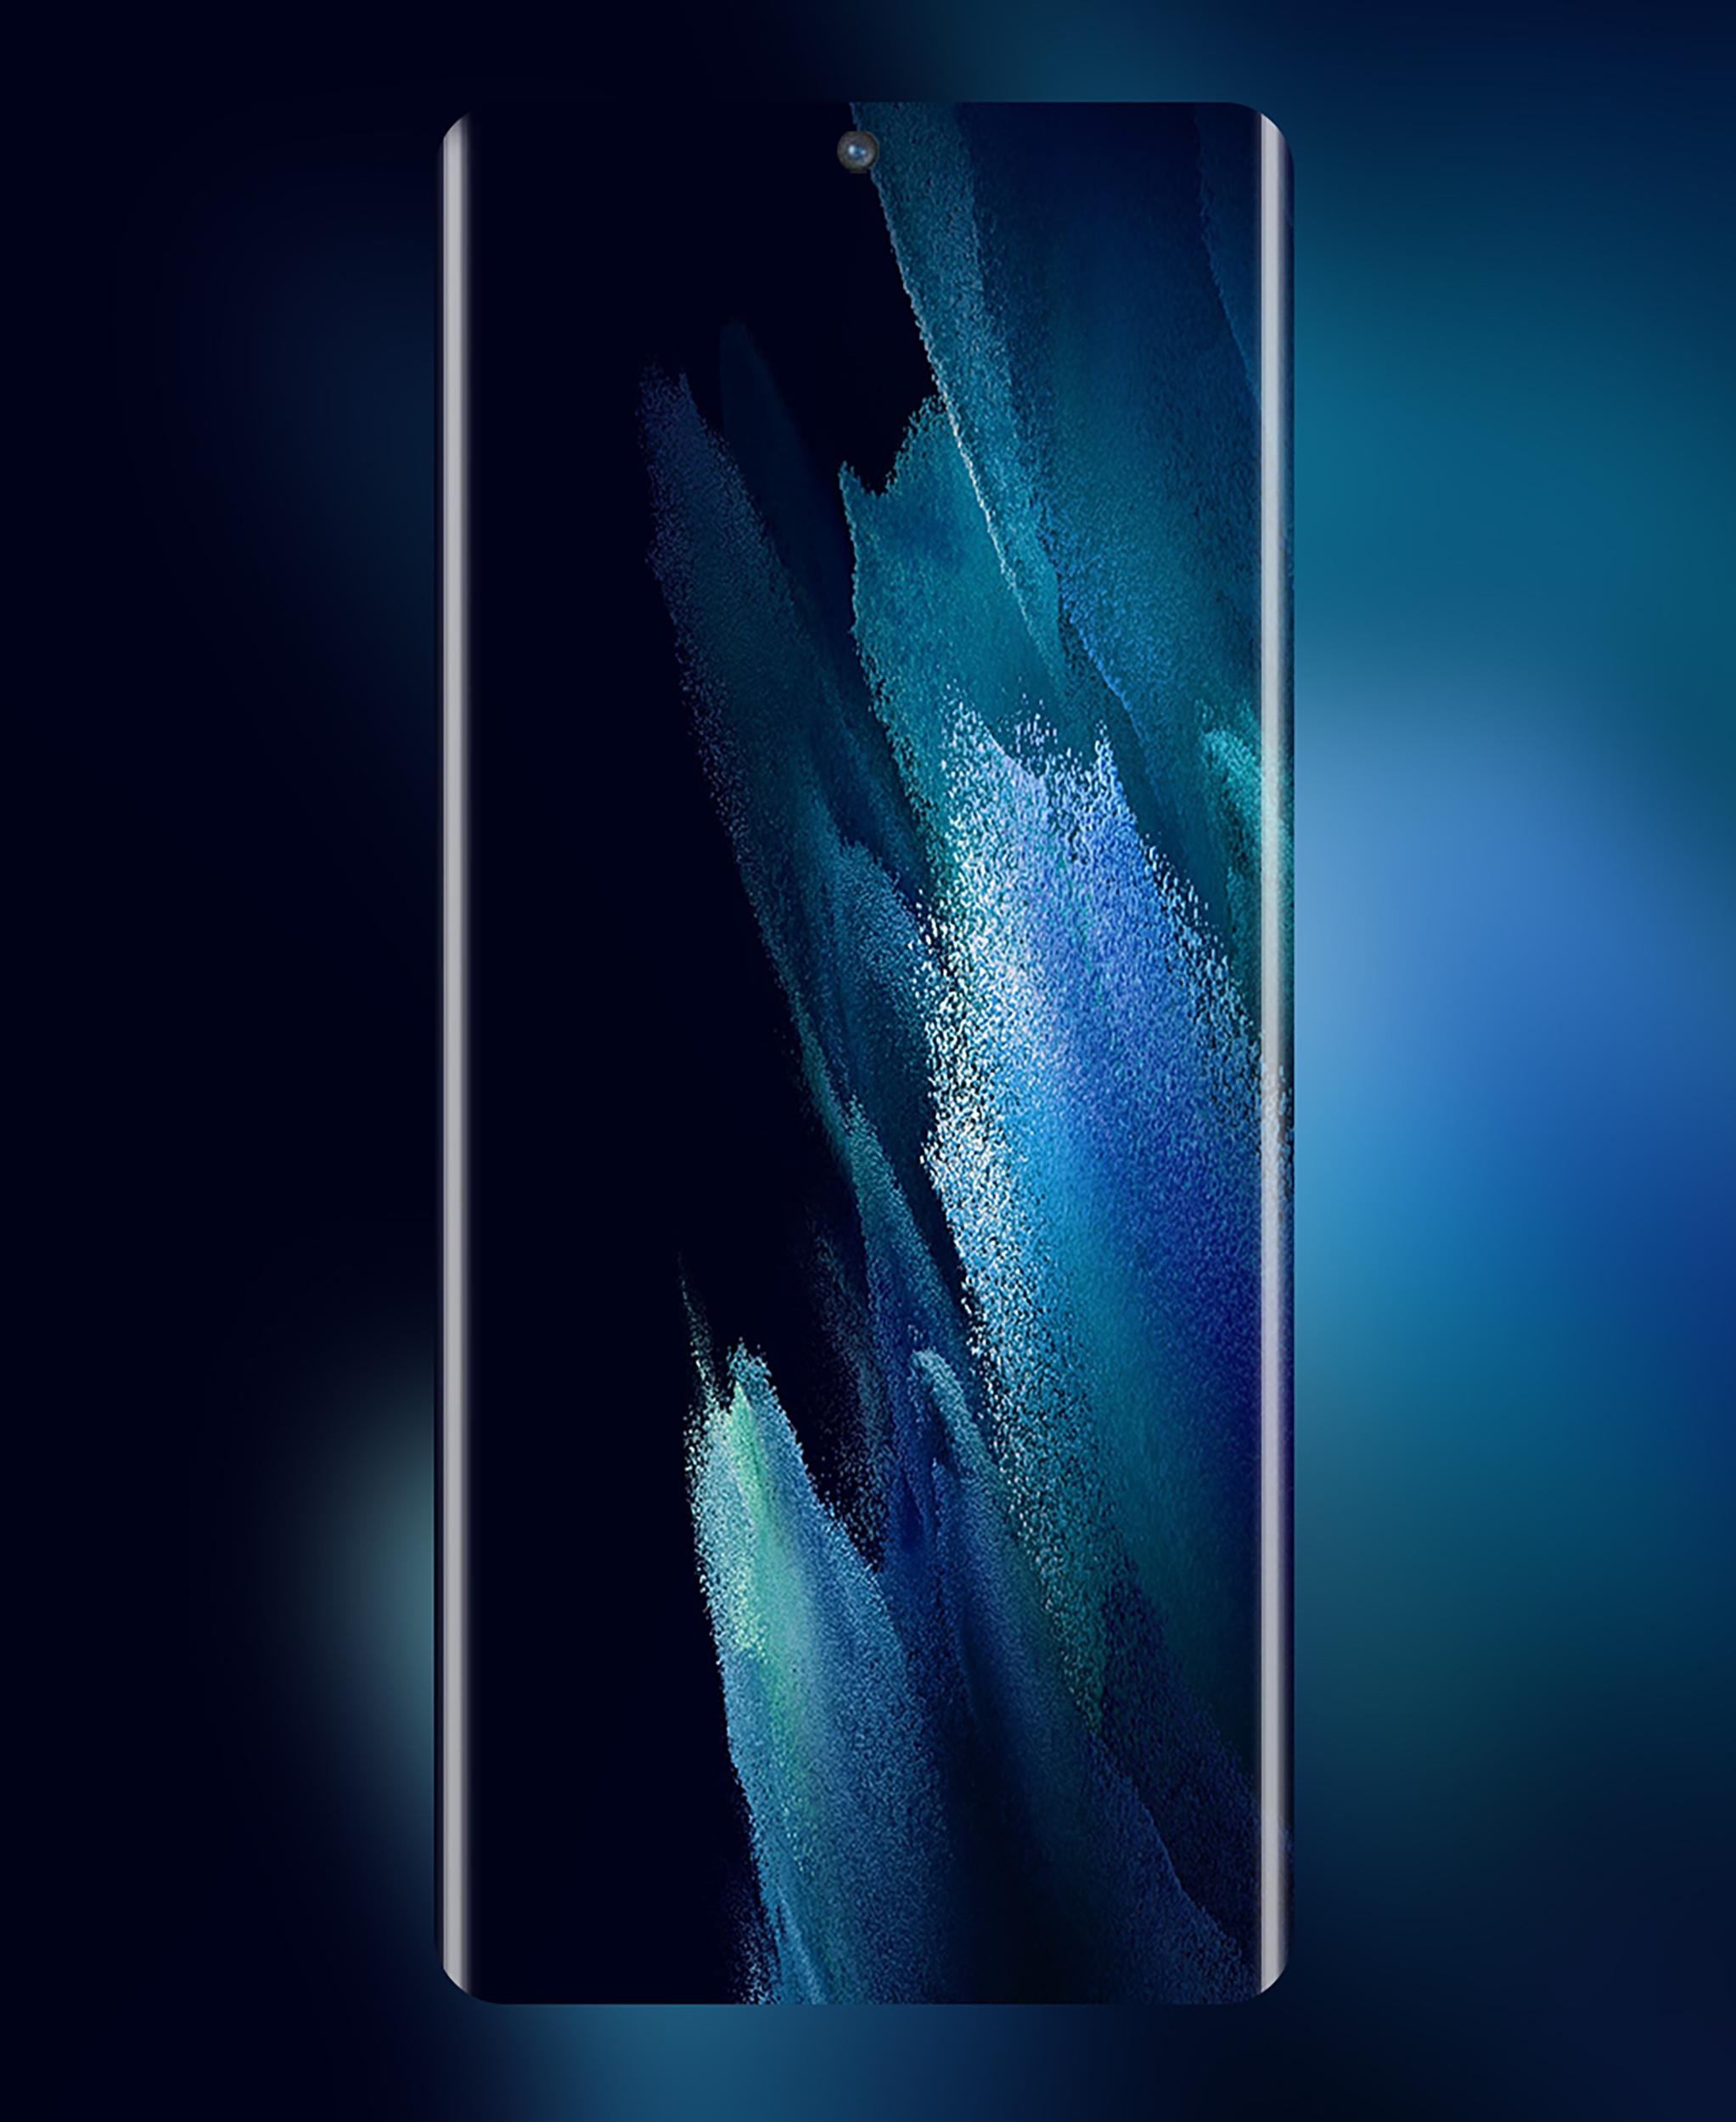 S21 Ultra Wallpaper có thể đem lại cho bạn nhiều trải nghiệm tuyệt vời trên điện thoại Samsung của bạn. Với nền tảng wallpaper chất lượng cao, bạn sẽ không còn lo lắng về chất lượng hình ảnh trên màn hình điện thoại của mình. Hãy sử dụng S21 Ultra Wallpaper để trang trí điện thoại và làm cho màn hình của bạn trở nên đặc biệt hơn.